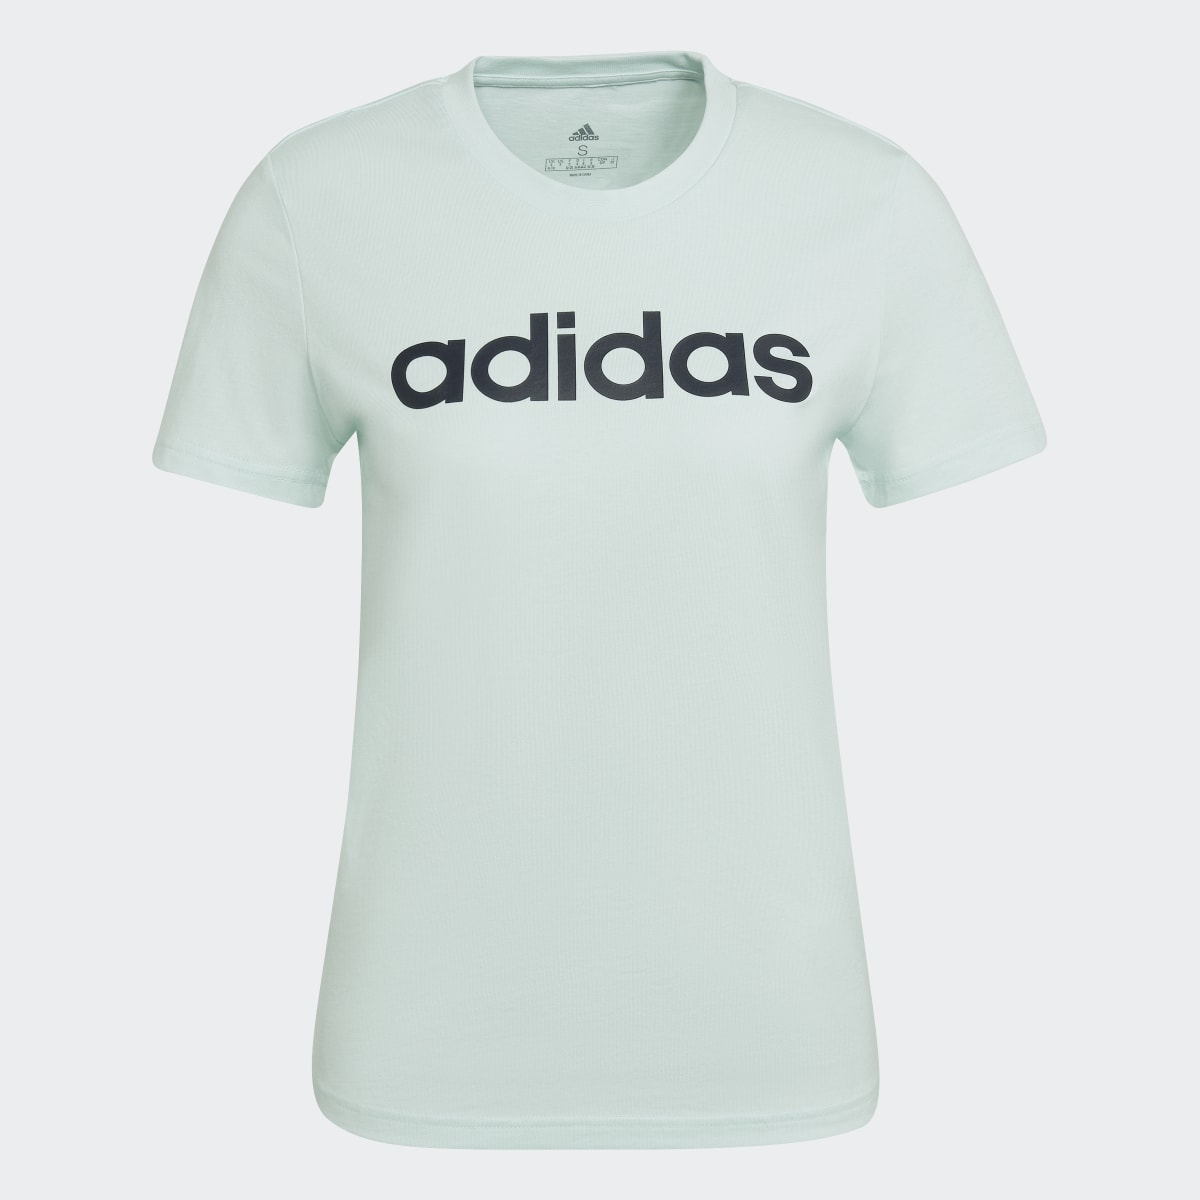 Adidas LOUNGEWEAR Essentials Slim Logo T-Shirt. 5